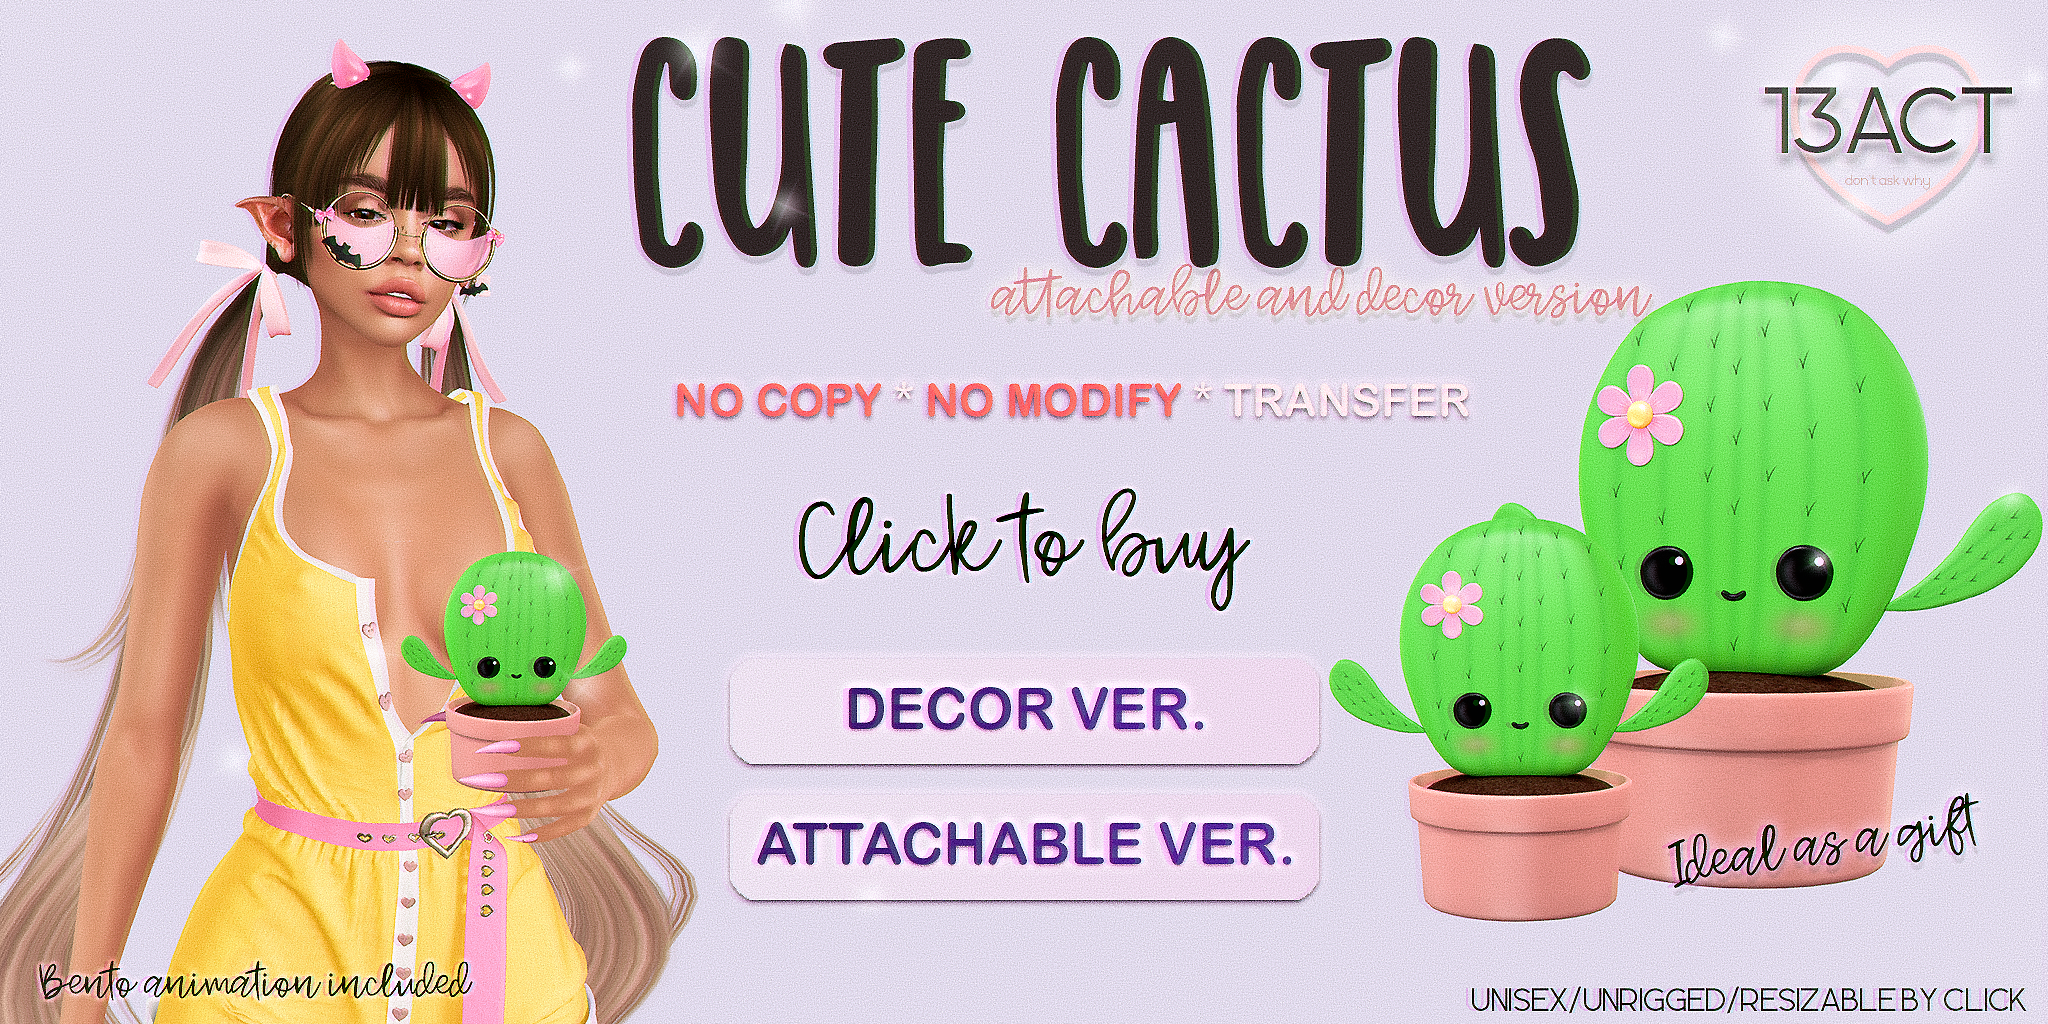 13Act – Cute Cactus